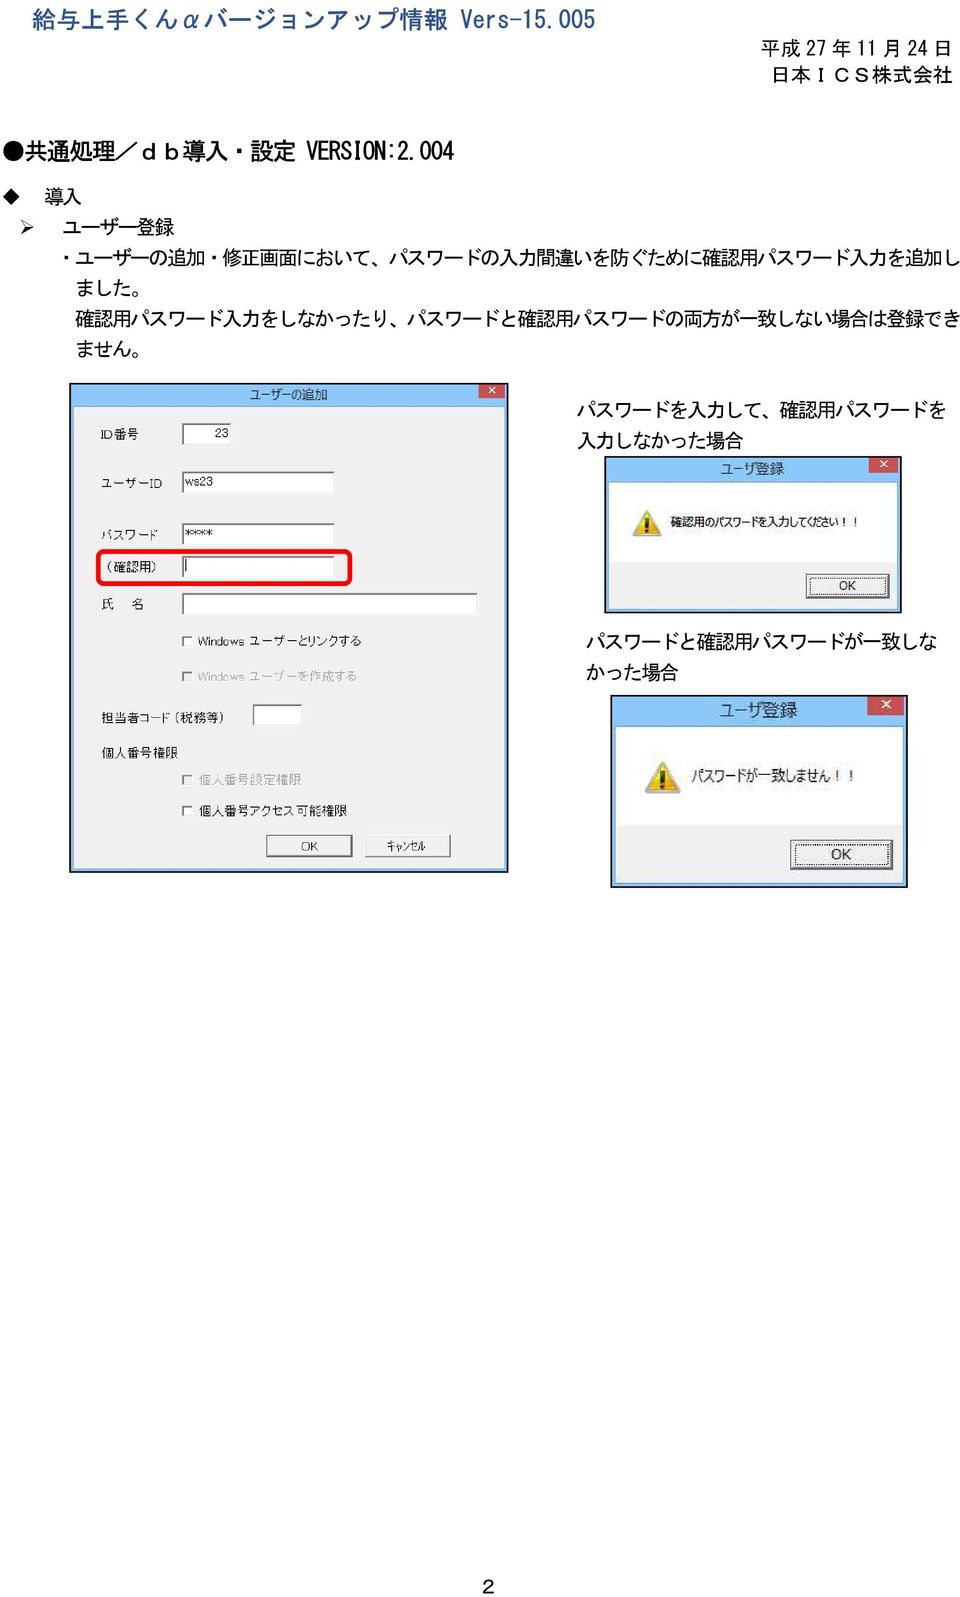 004 導 入 ユーザー 登 録 ユーザーの 追 加 修 正 画 面 において パスワードの 入 力 間 違 いを 防 ぐために 確 認 用 パスワード 入 力 を 追 加